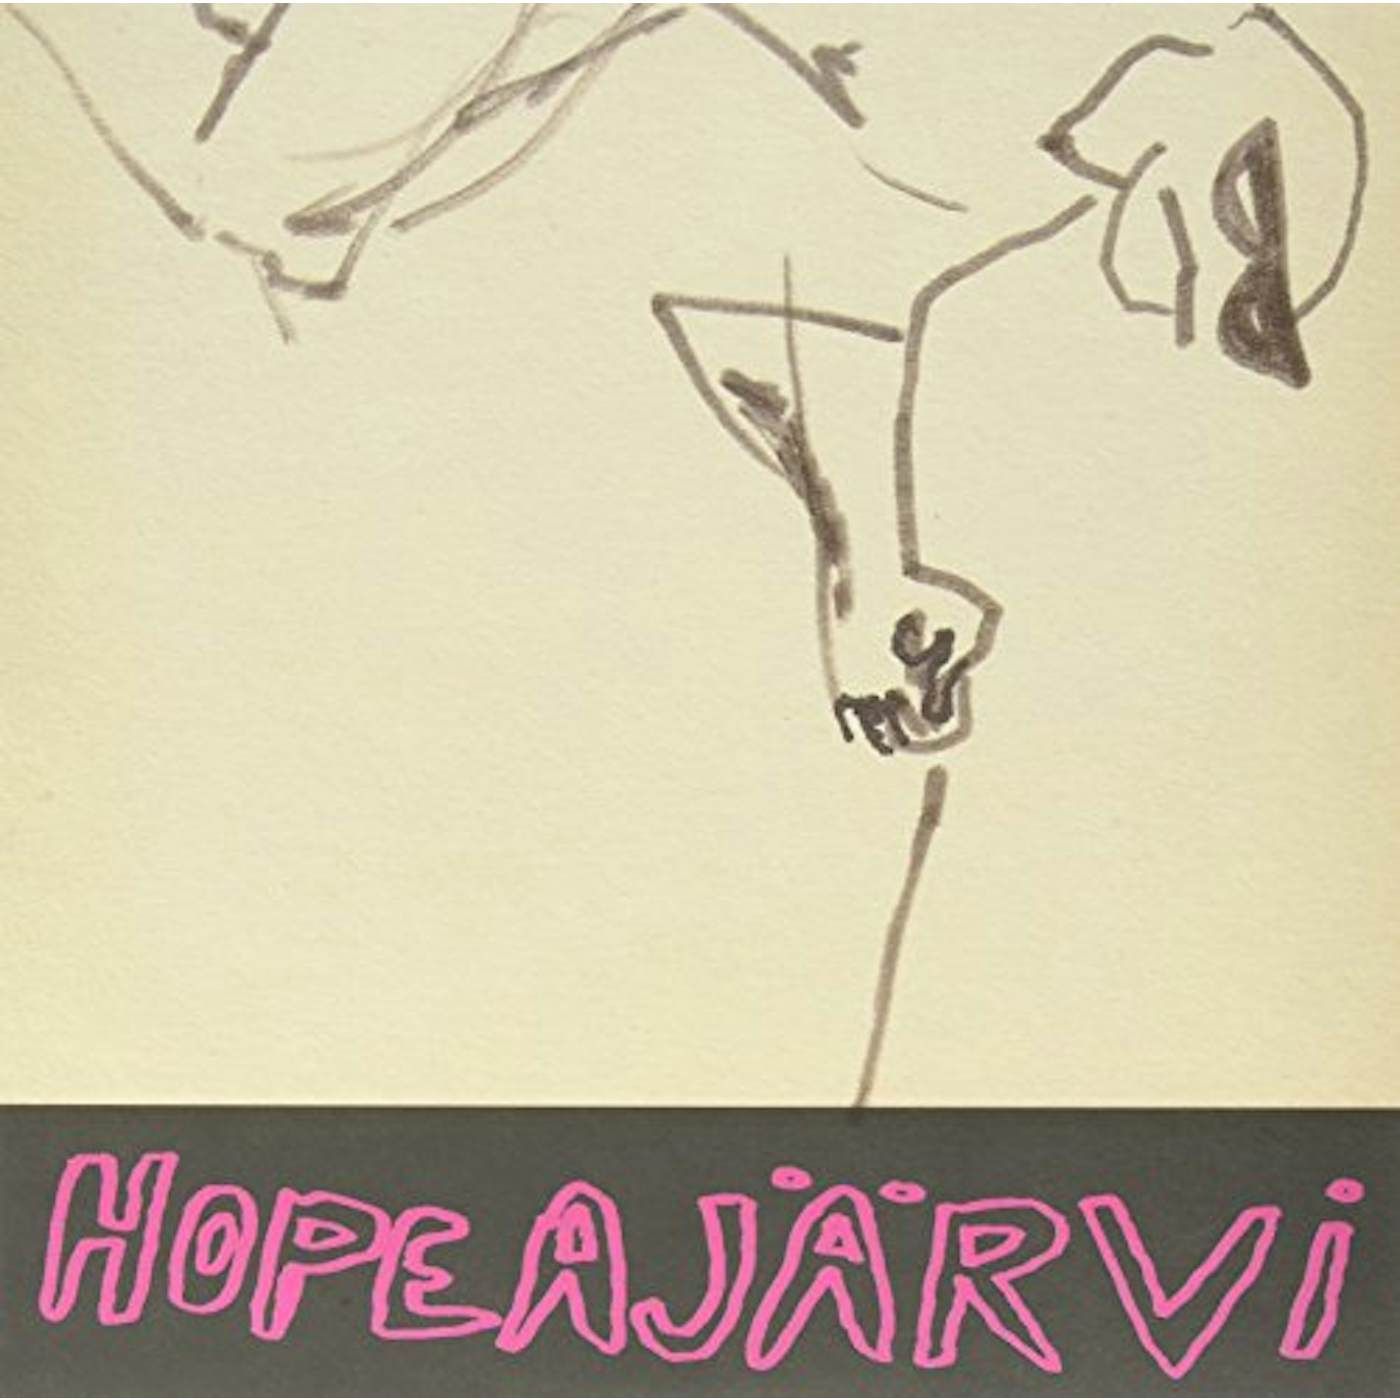 Hopeajärvi Vinyl Record